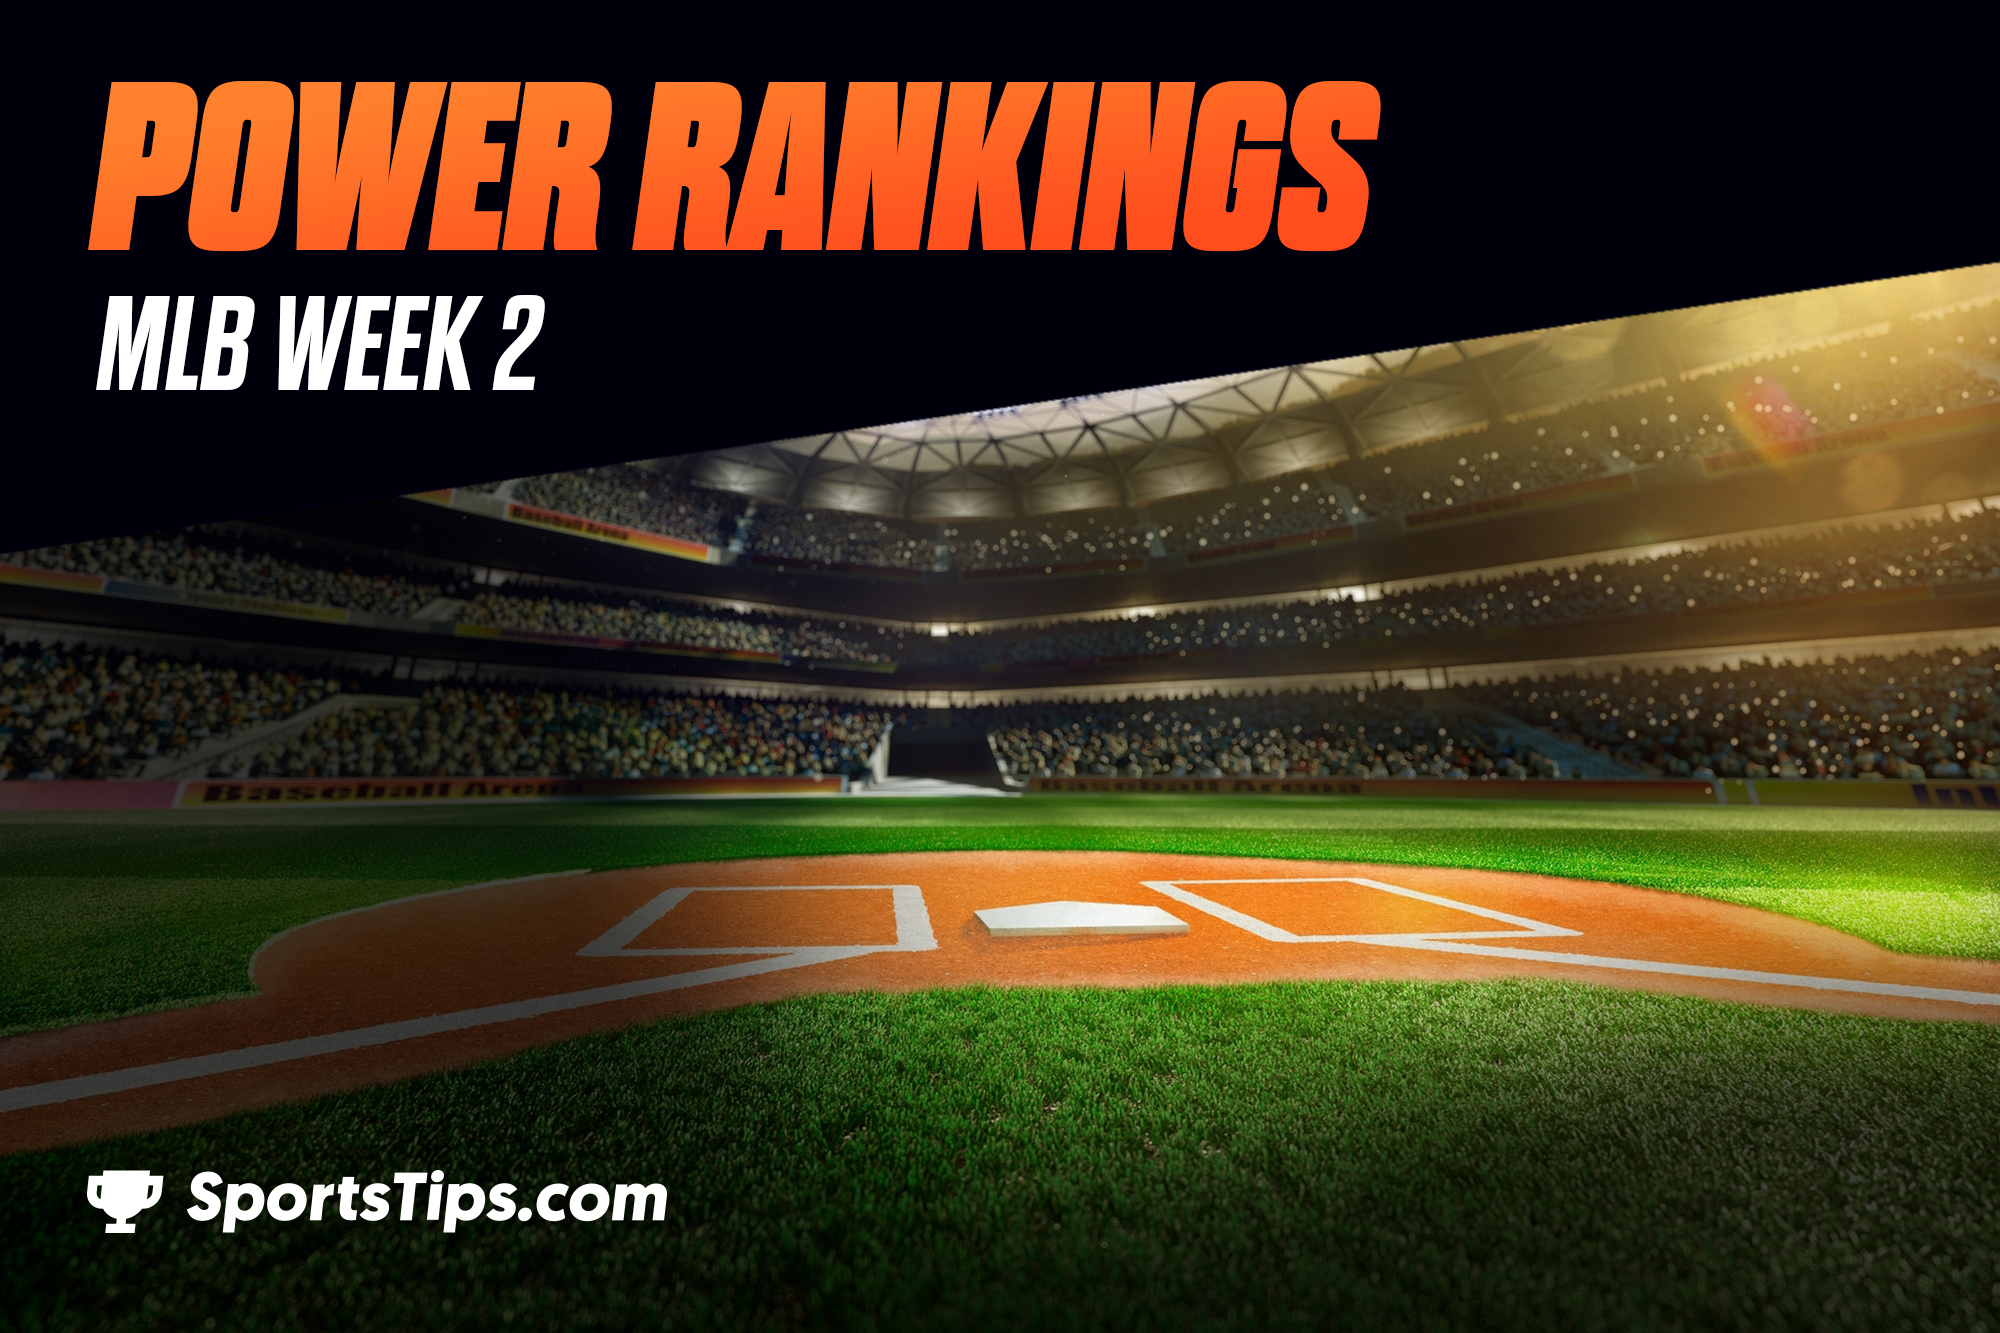 SportsTips’ MLB Power Rankings 2021: Week 2 